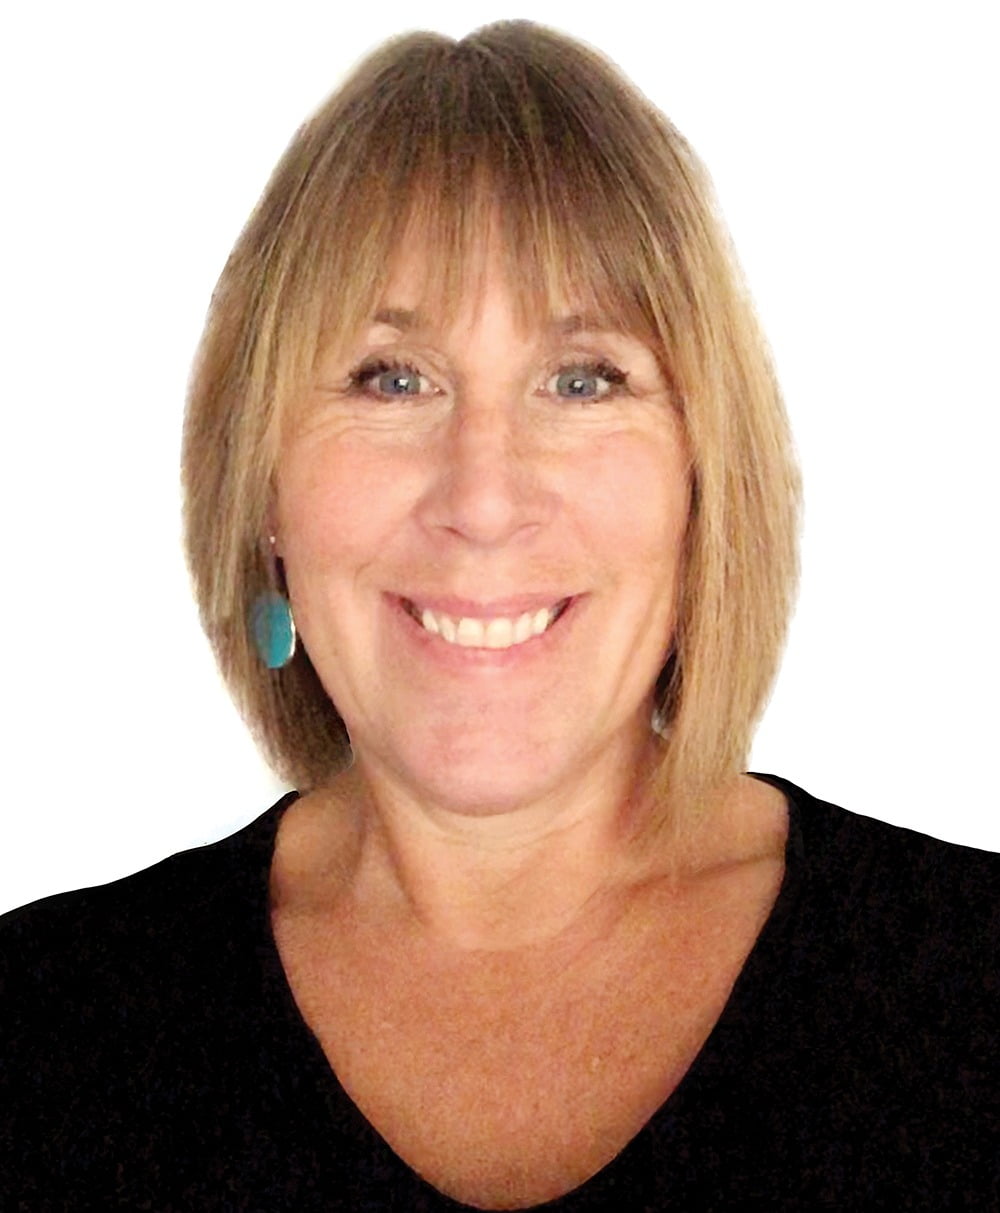 Kristen Kazarian - editor in chief